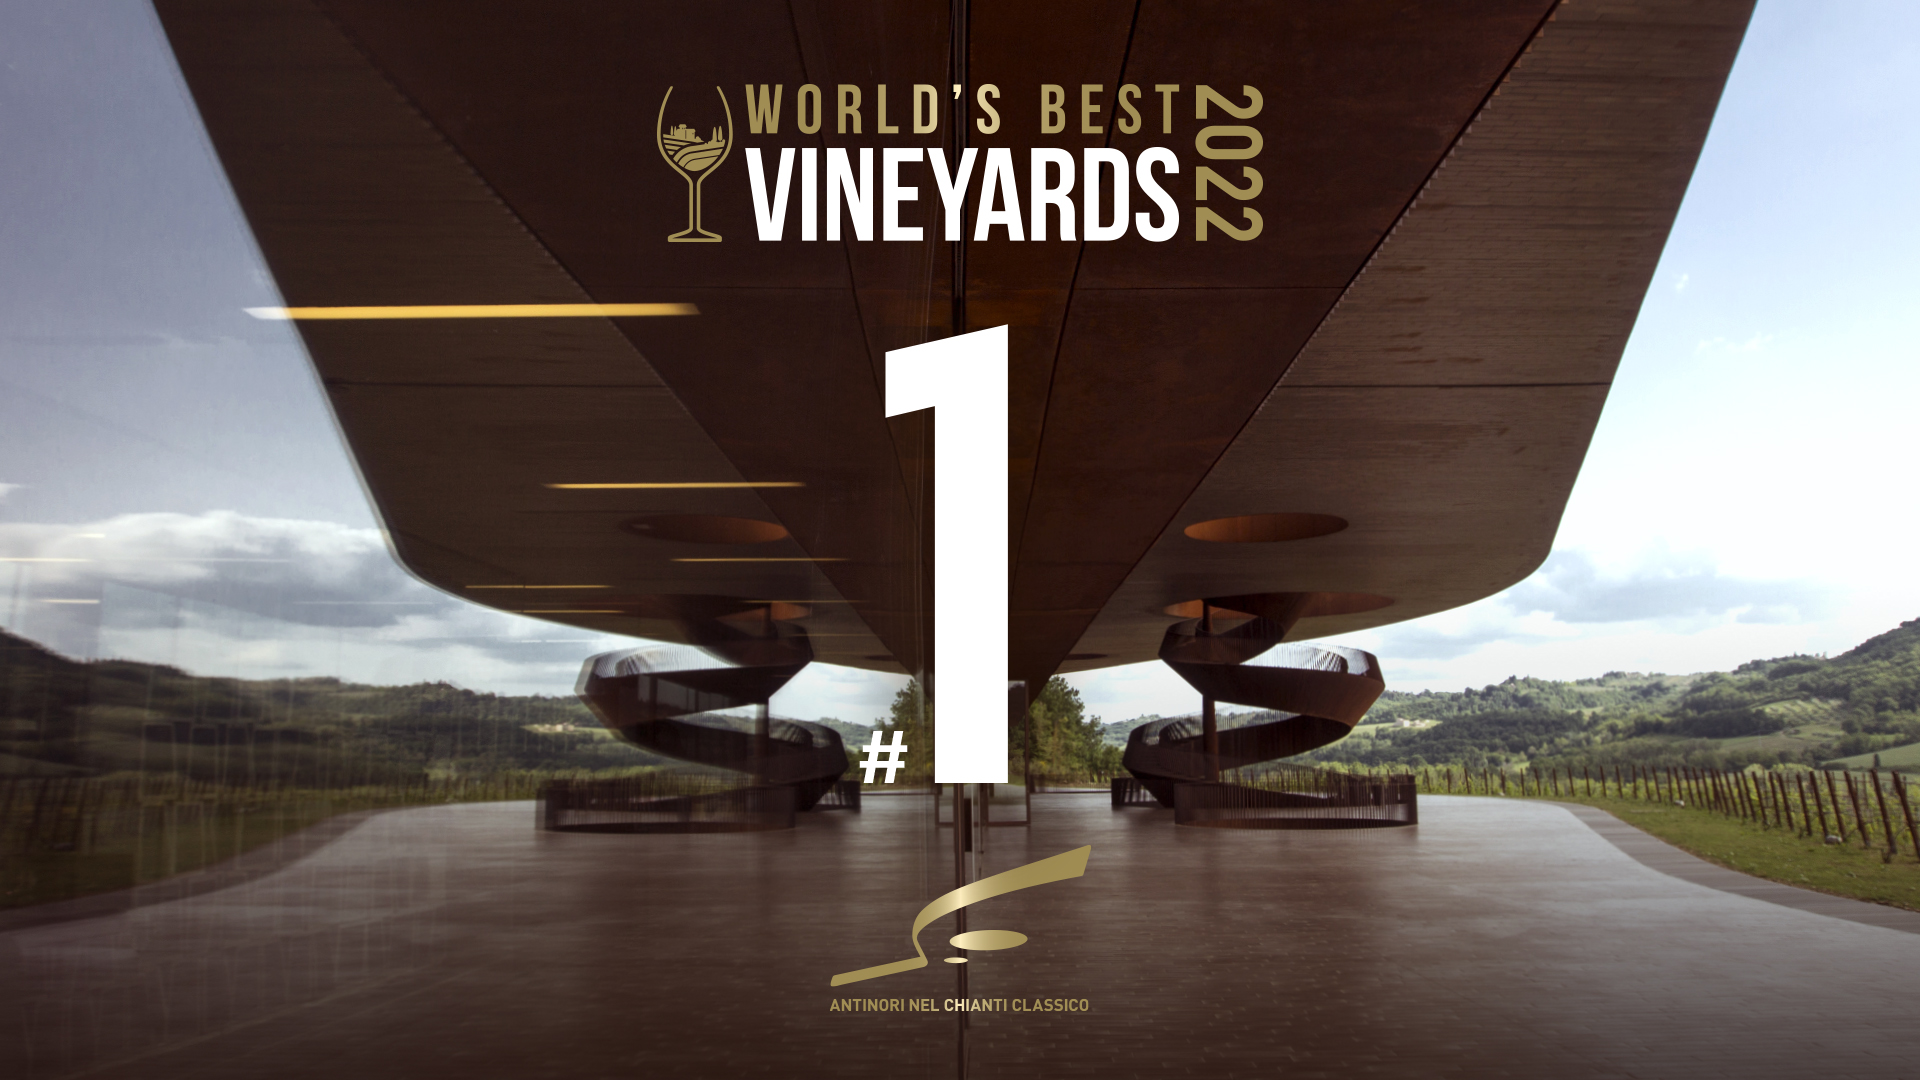 恭喜Antinori酒莊榮獲“全球最佳葡萄園2022”榜單第一名